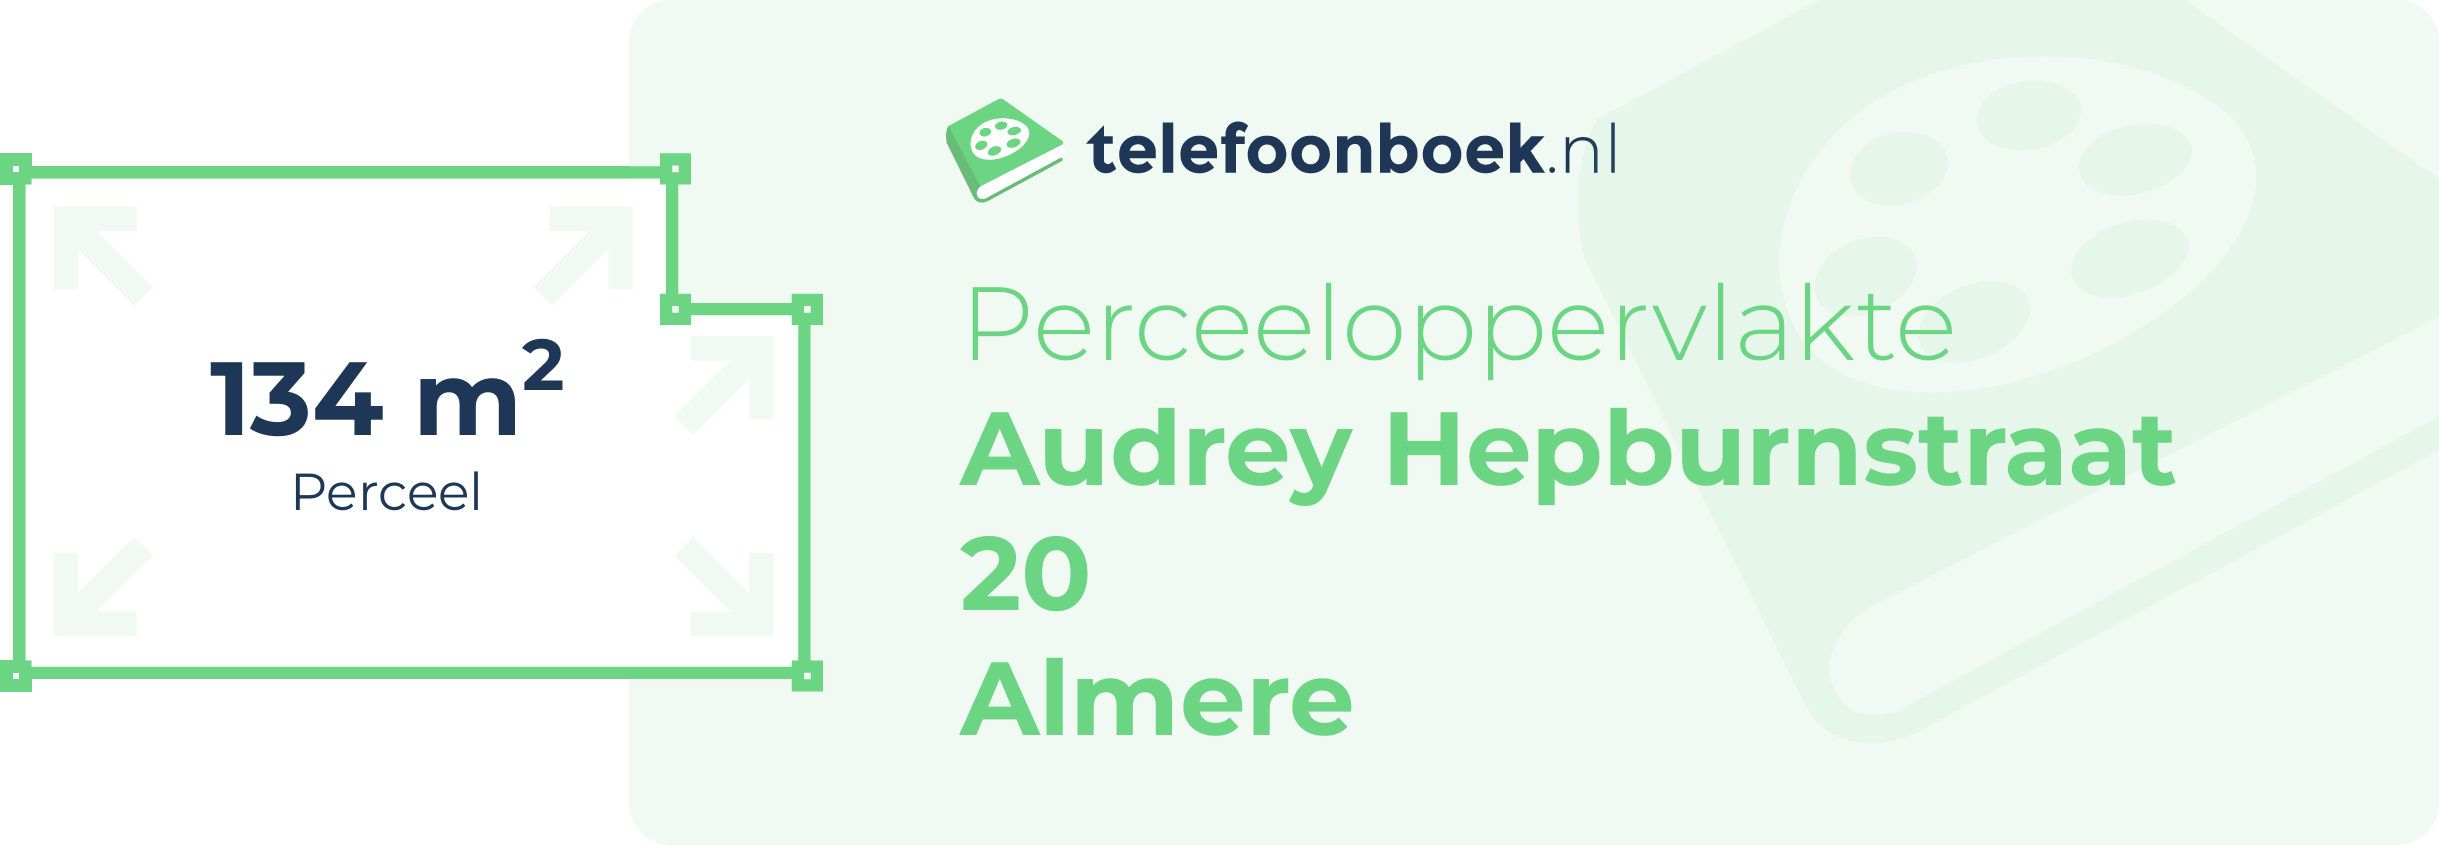 Perceeloppervlakte Audrey Hepburnstraat 20 Almere